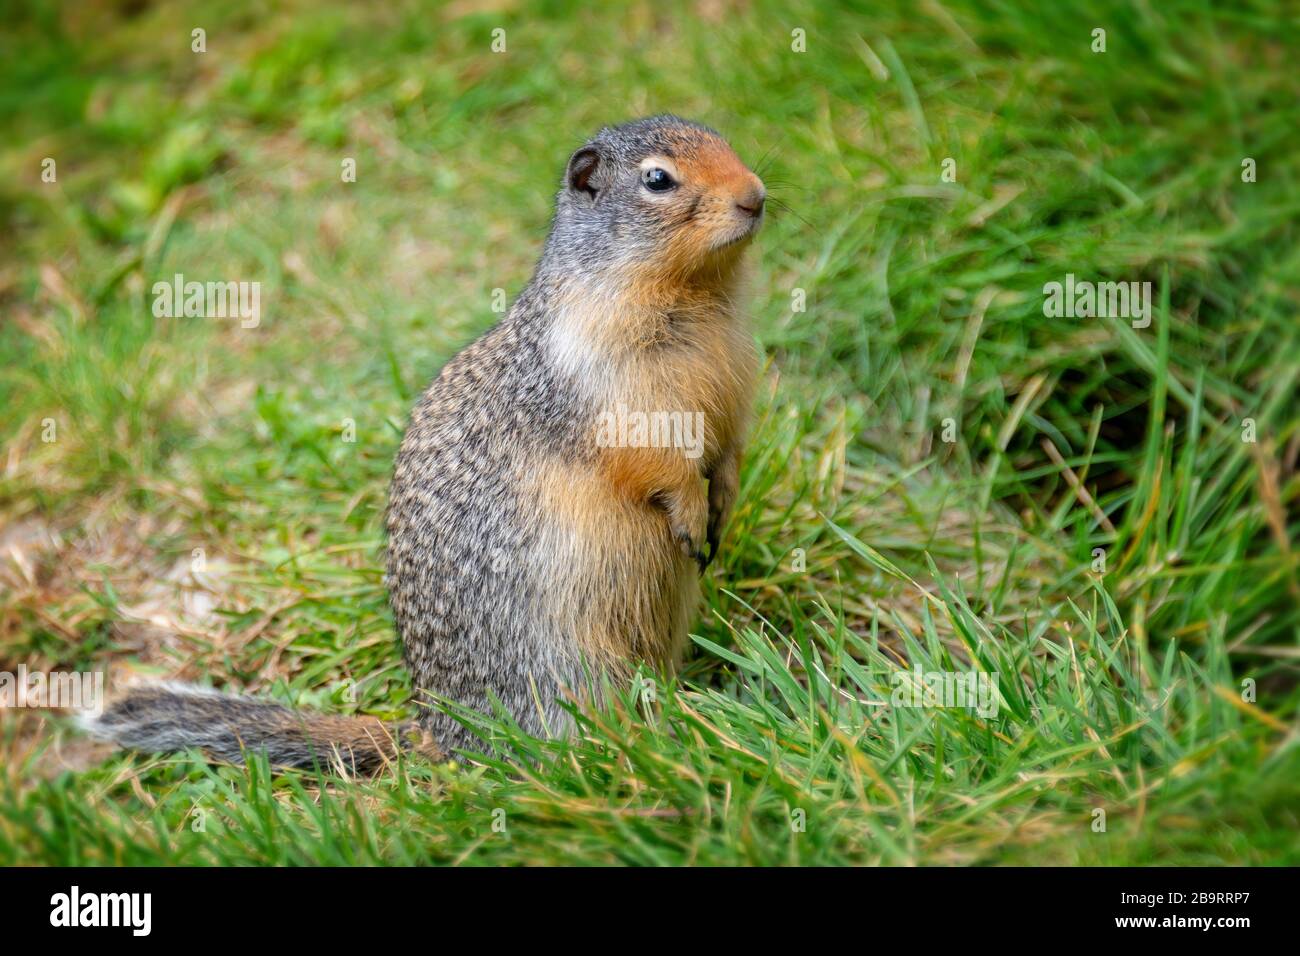 Gros plan d'un écureuil colombien debout dans l'herbe Banque D'Images